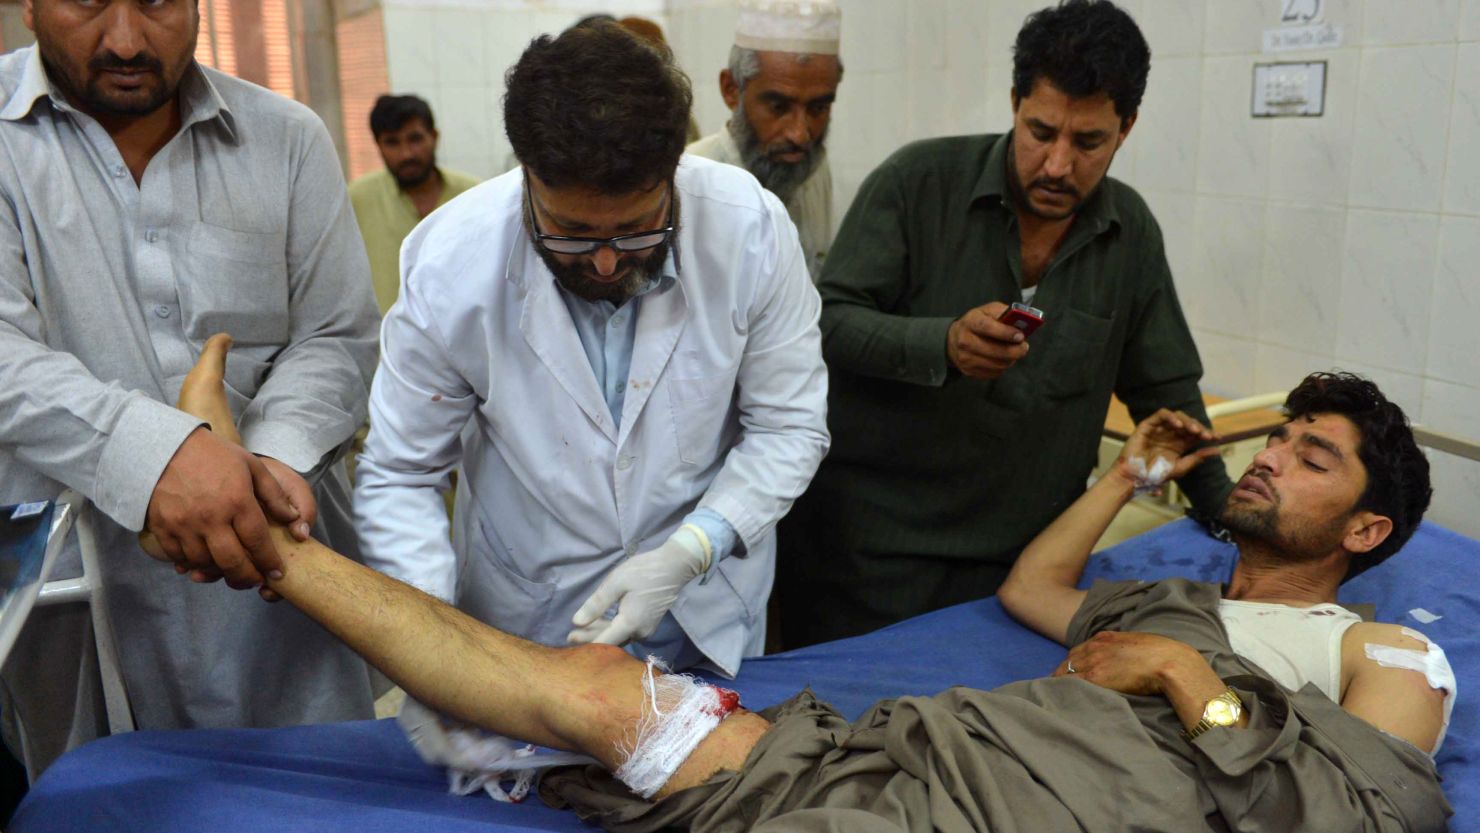 Pakistani paramedics treat an injured man following a bomb blast in Peshawar on April 29, 2013.